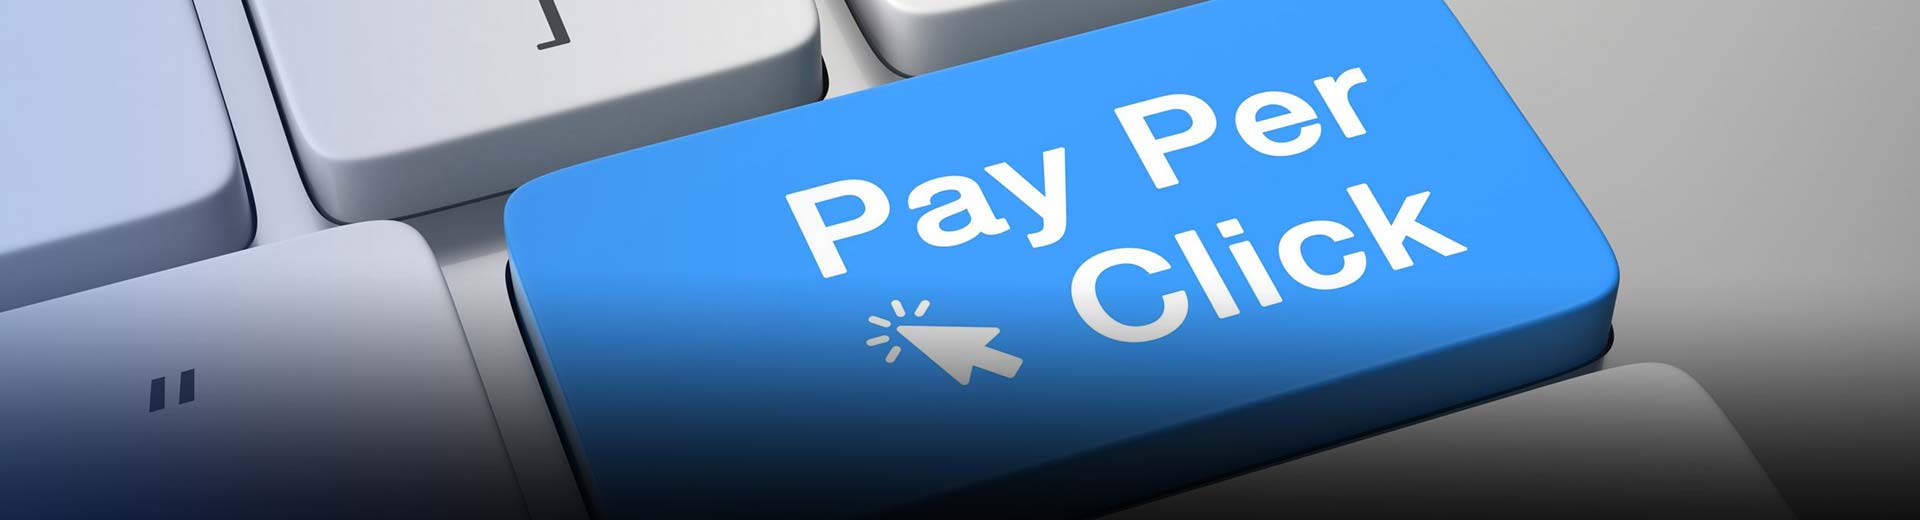 प्रति क्लिक भुगतान को बढ़ावा दें संबद्ध कार्यक्रम